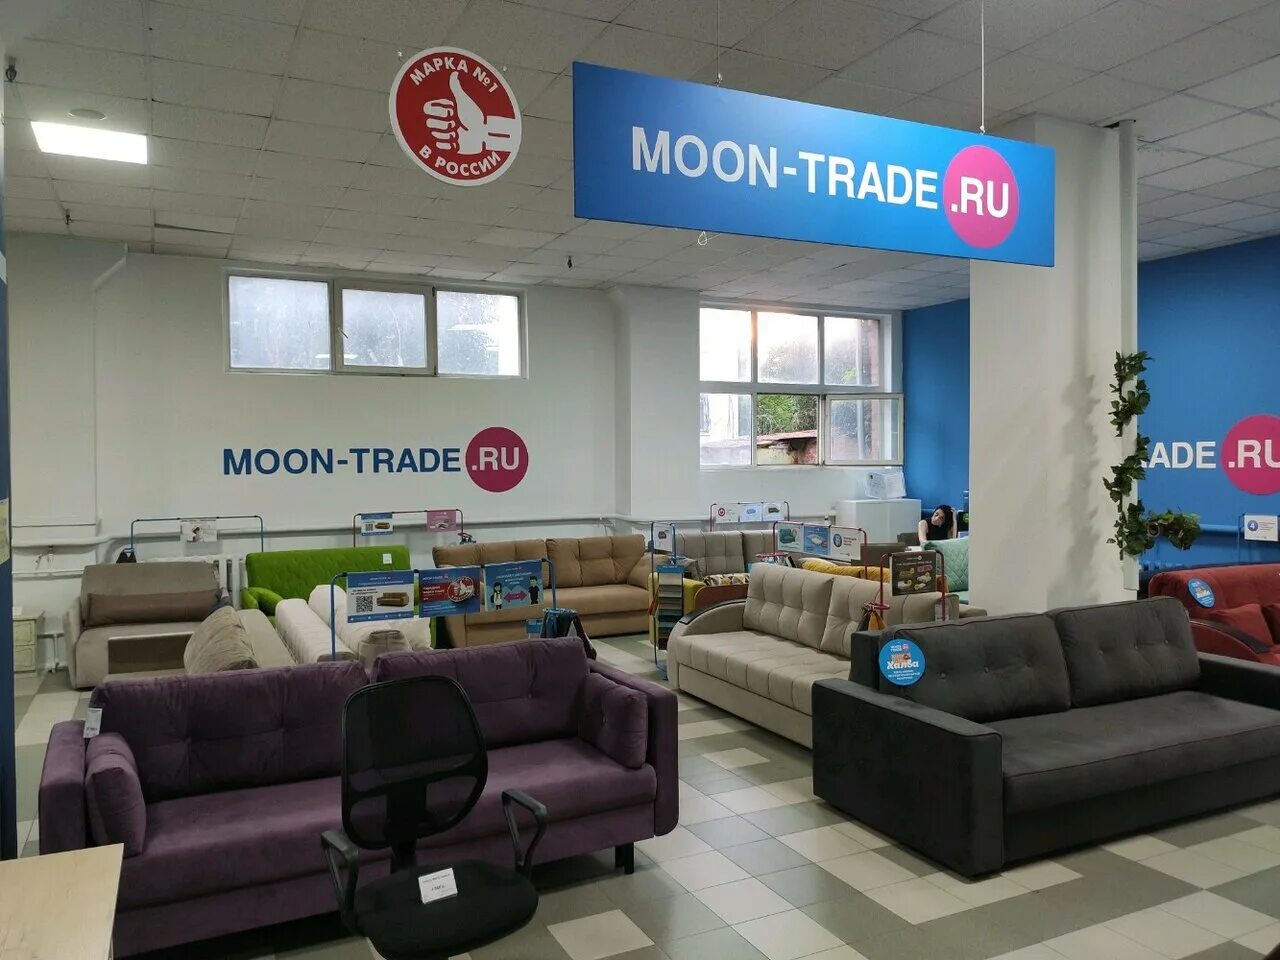 Моон ТРЕЙД. Магазин мебели Moon trade. Moon магазин. Moon trade диваны. Адрес мун